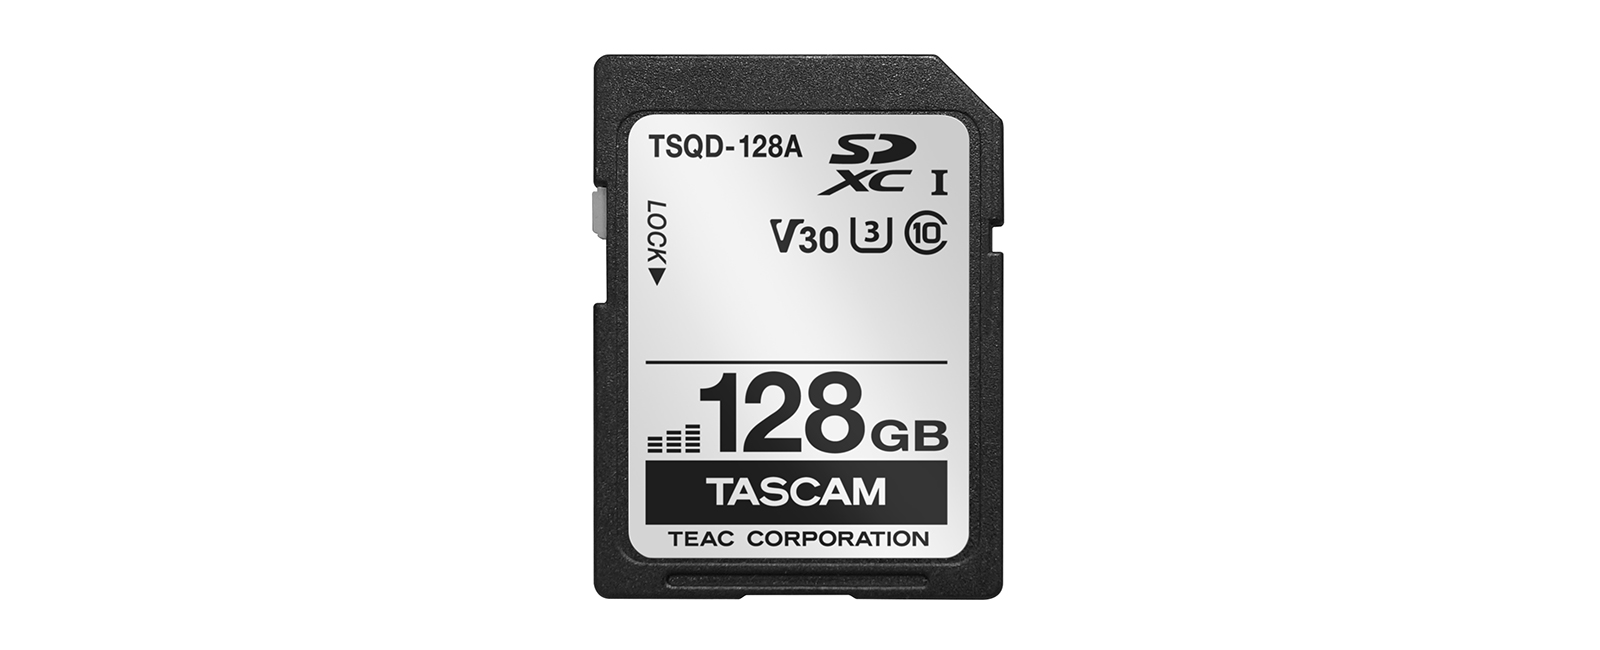 TASCAM Announces the TSQD-128A SDXC Card